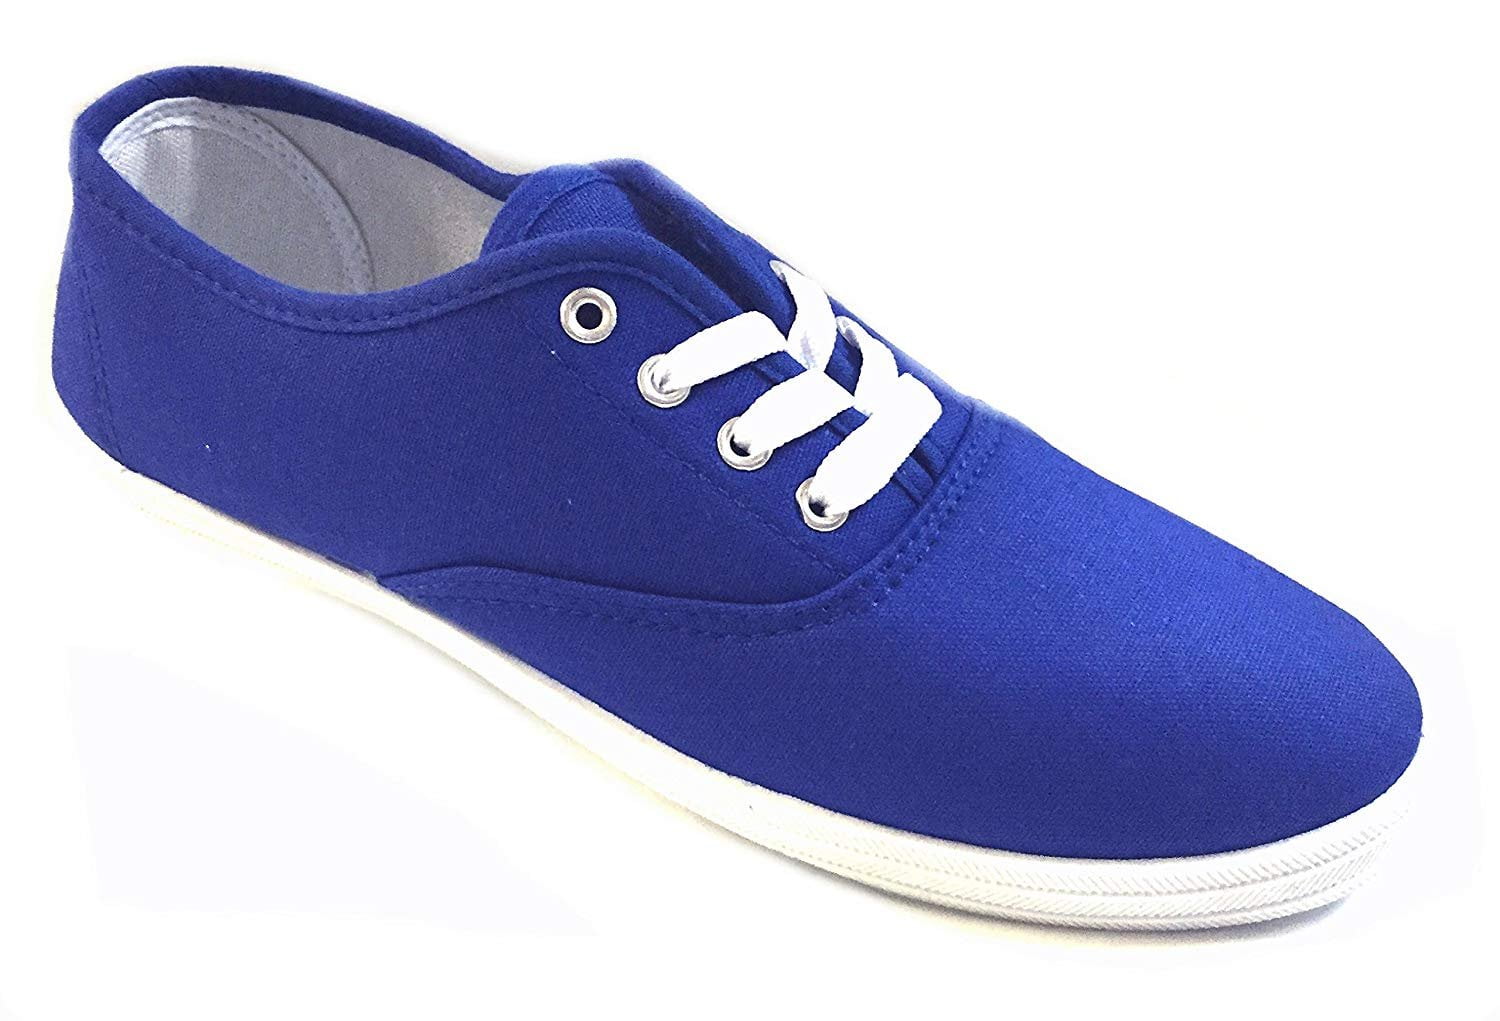 royal blue canvas shoes